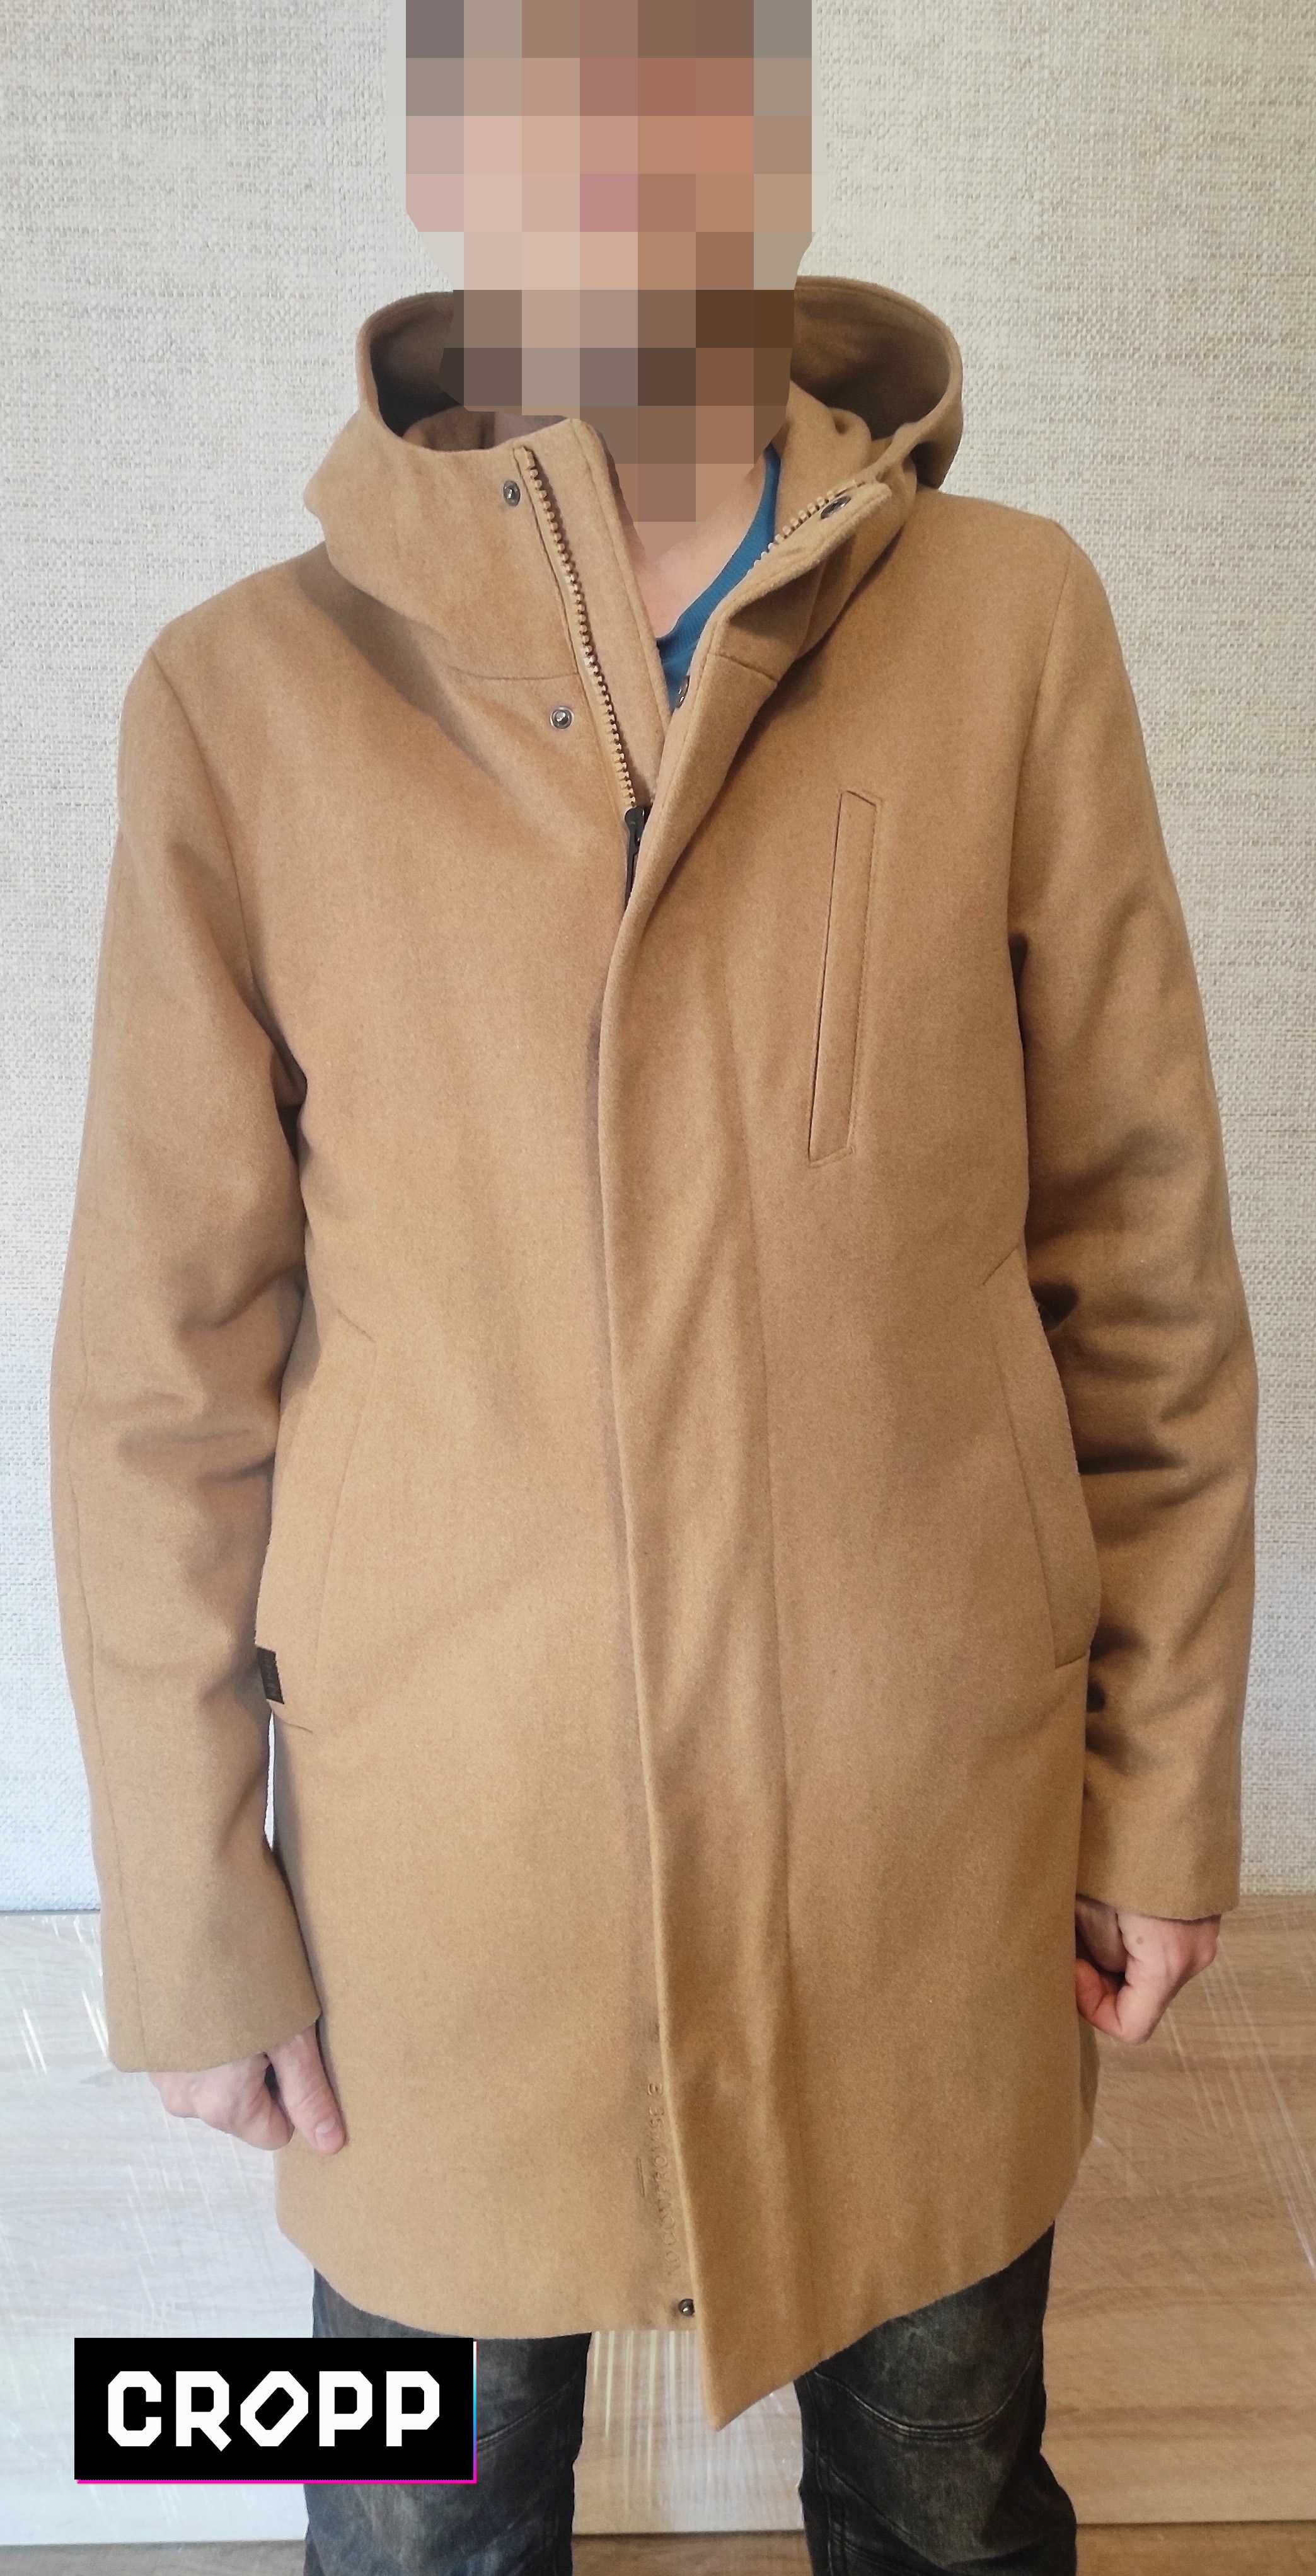 Сropp - Куртка Пальто с капюшоном (модная парка)